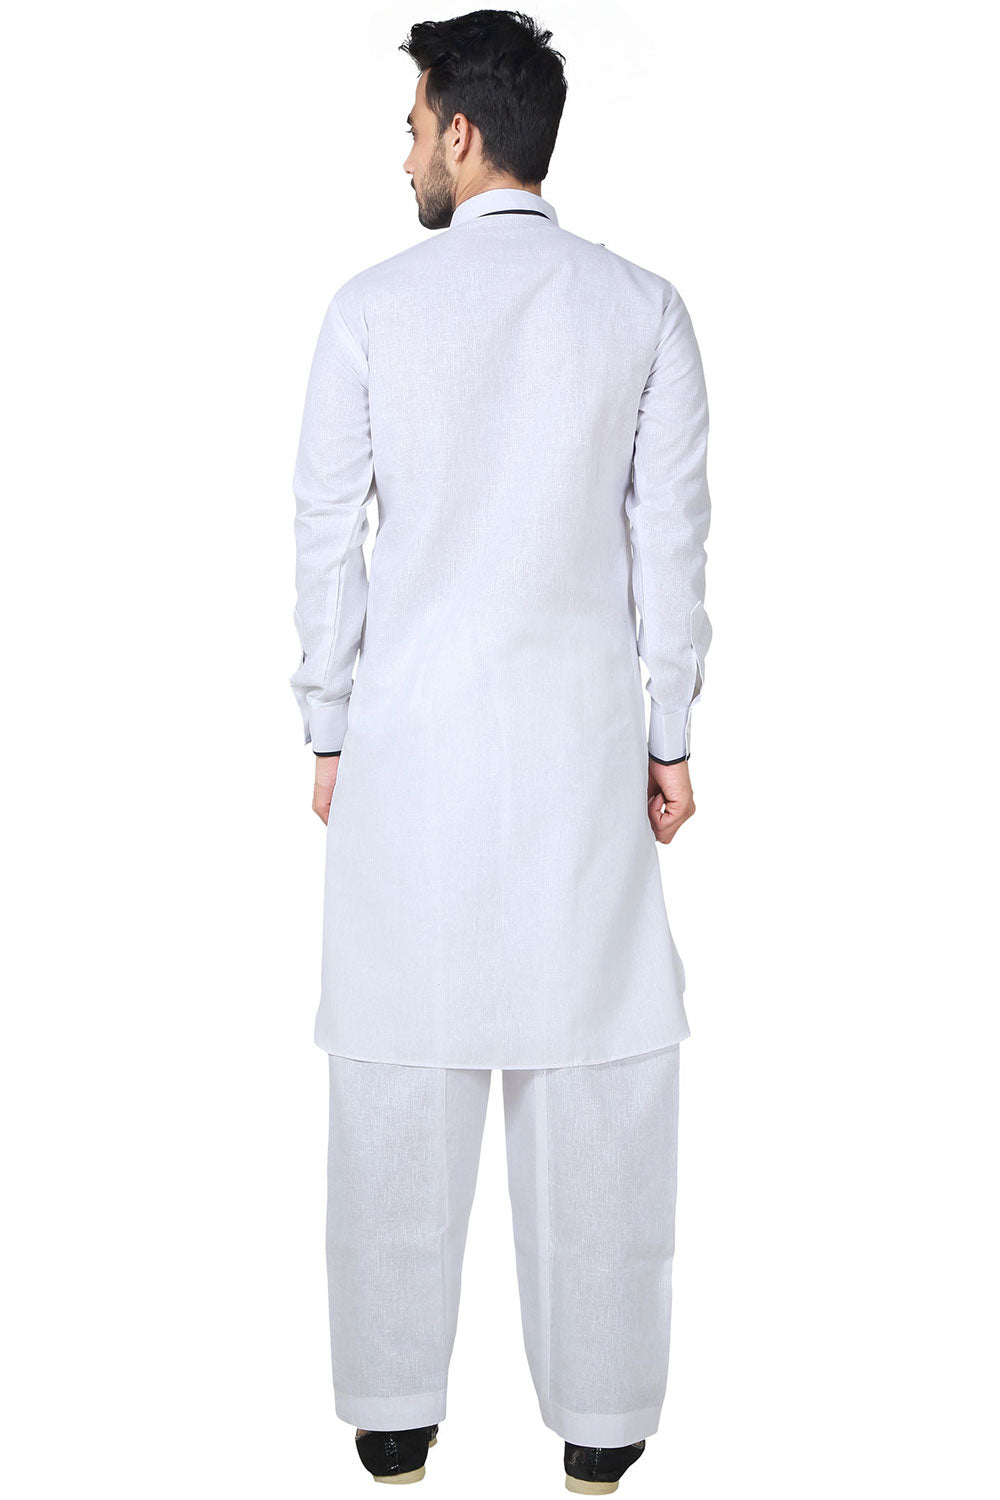 Buy Men's Blended Cotton Solid Kurta Set in White Online - Back